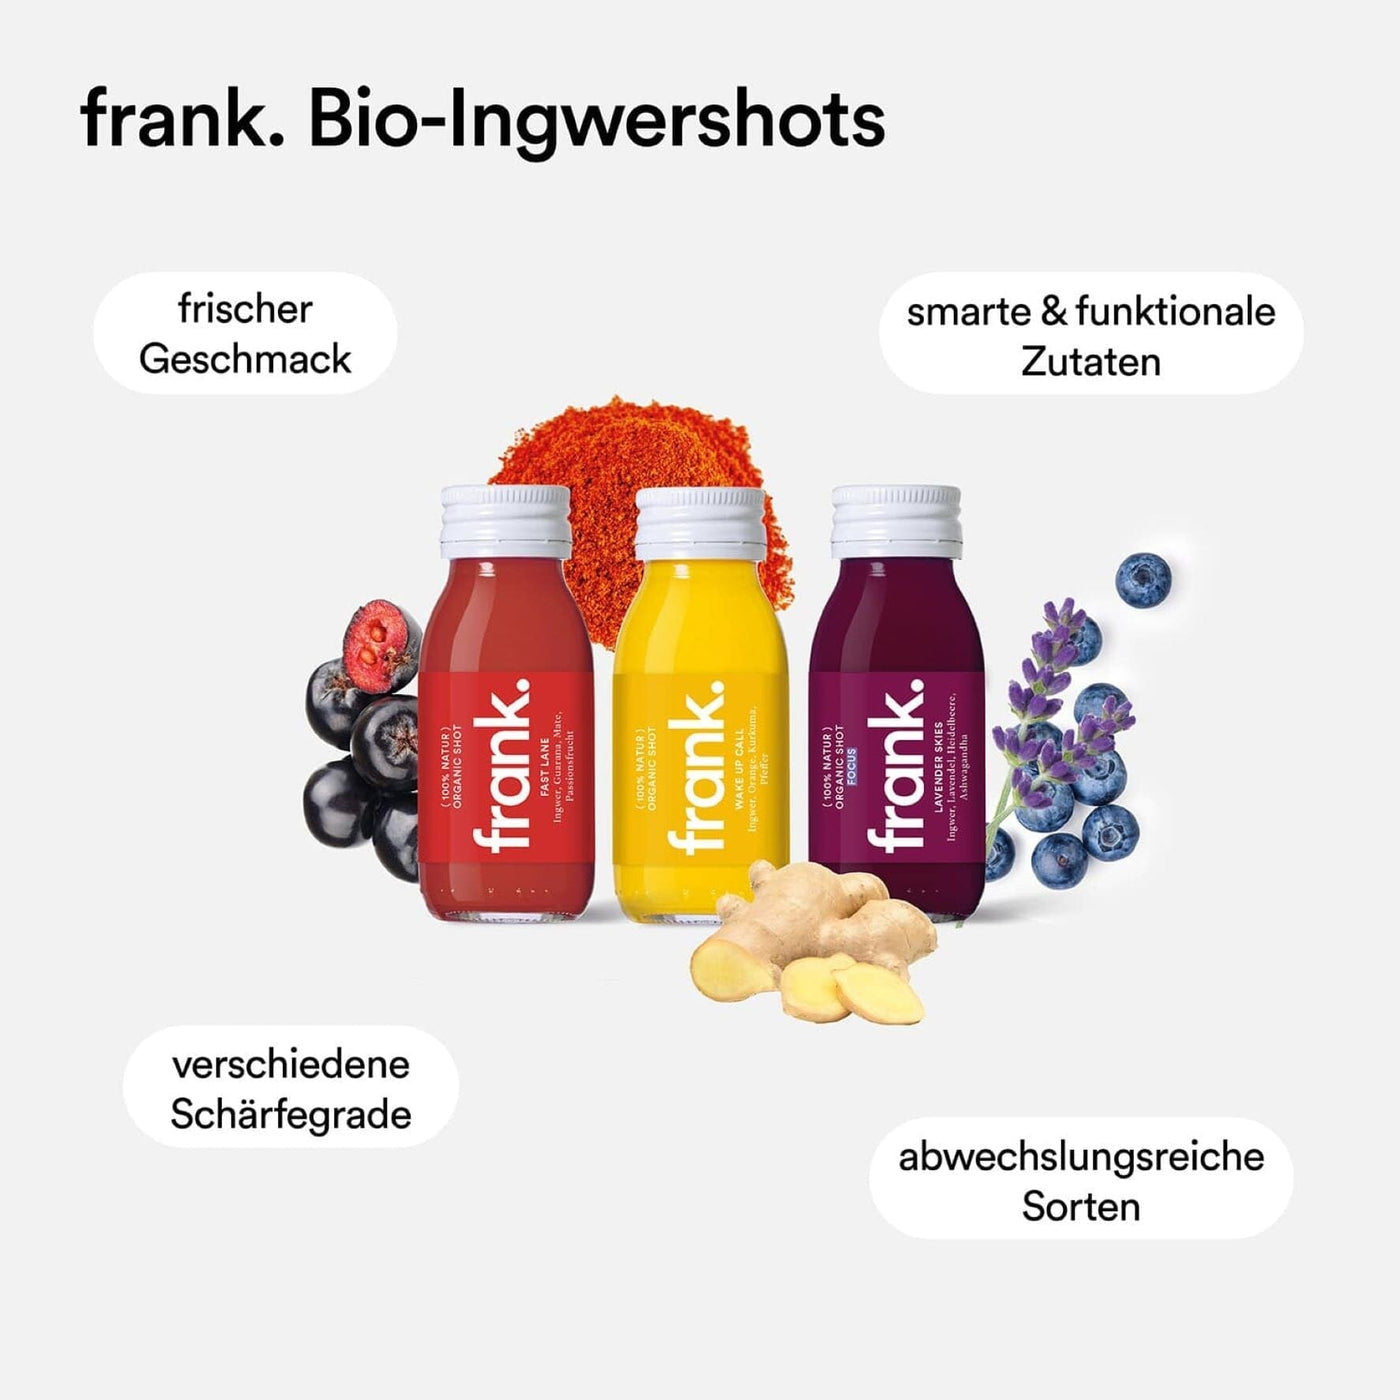 Die frank. bio Ingwershots